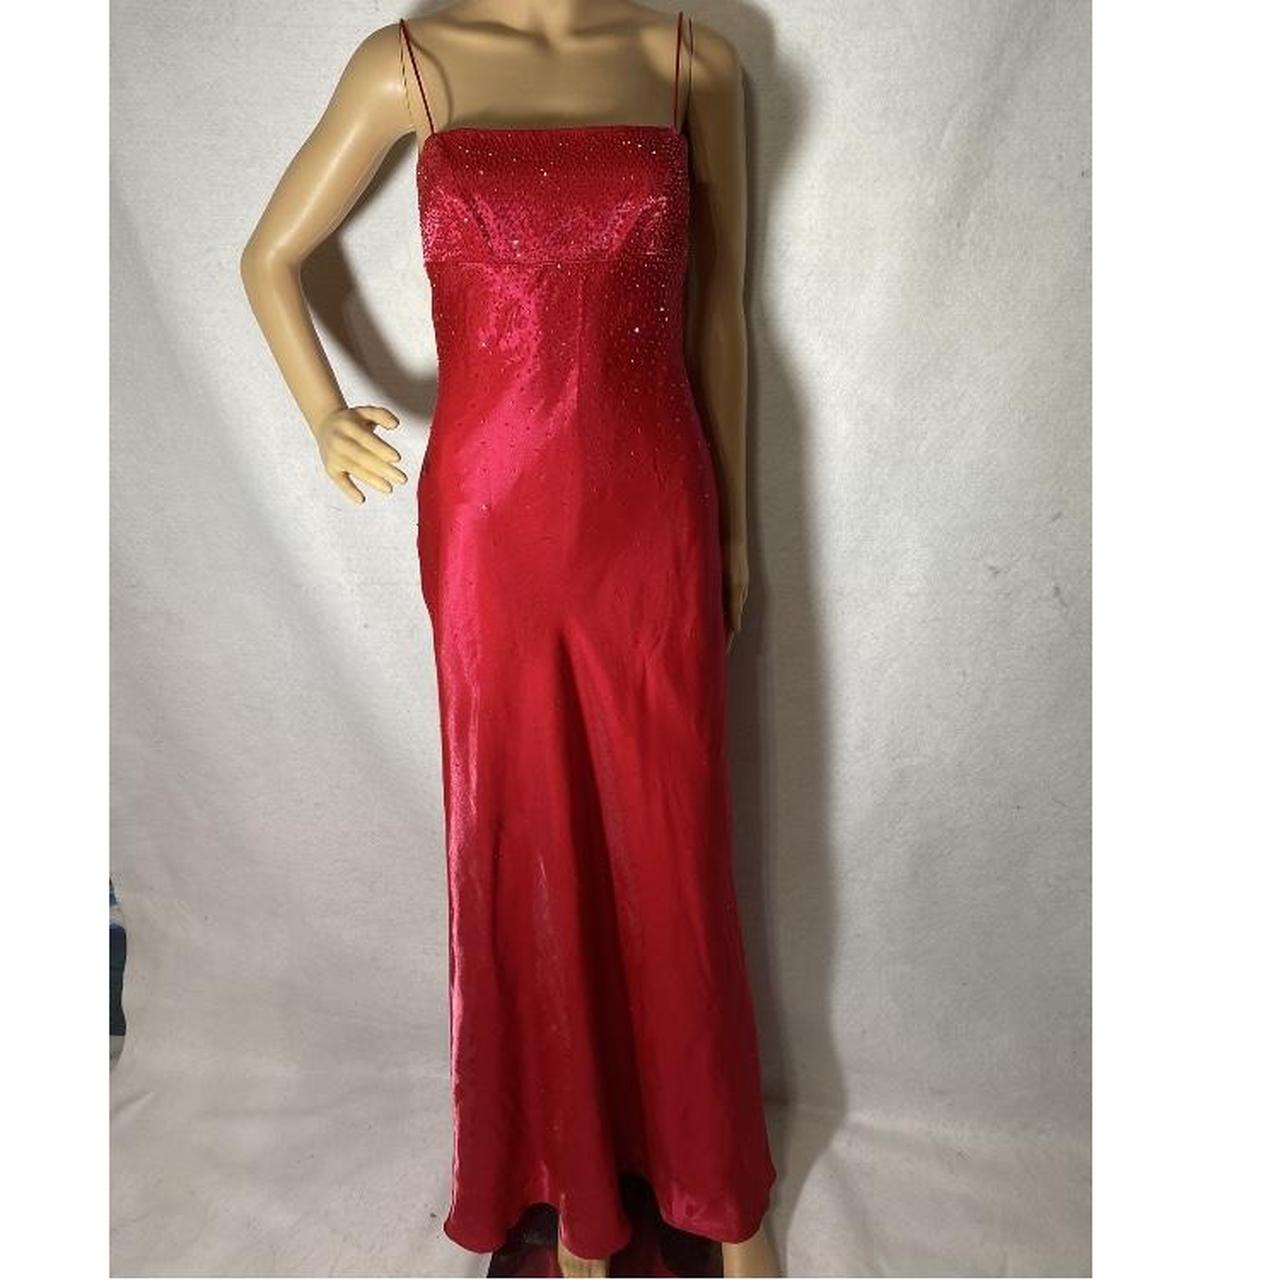 Vintage Vampire Red Dress With Shoulder Straps and ... - Depop